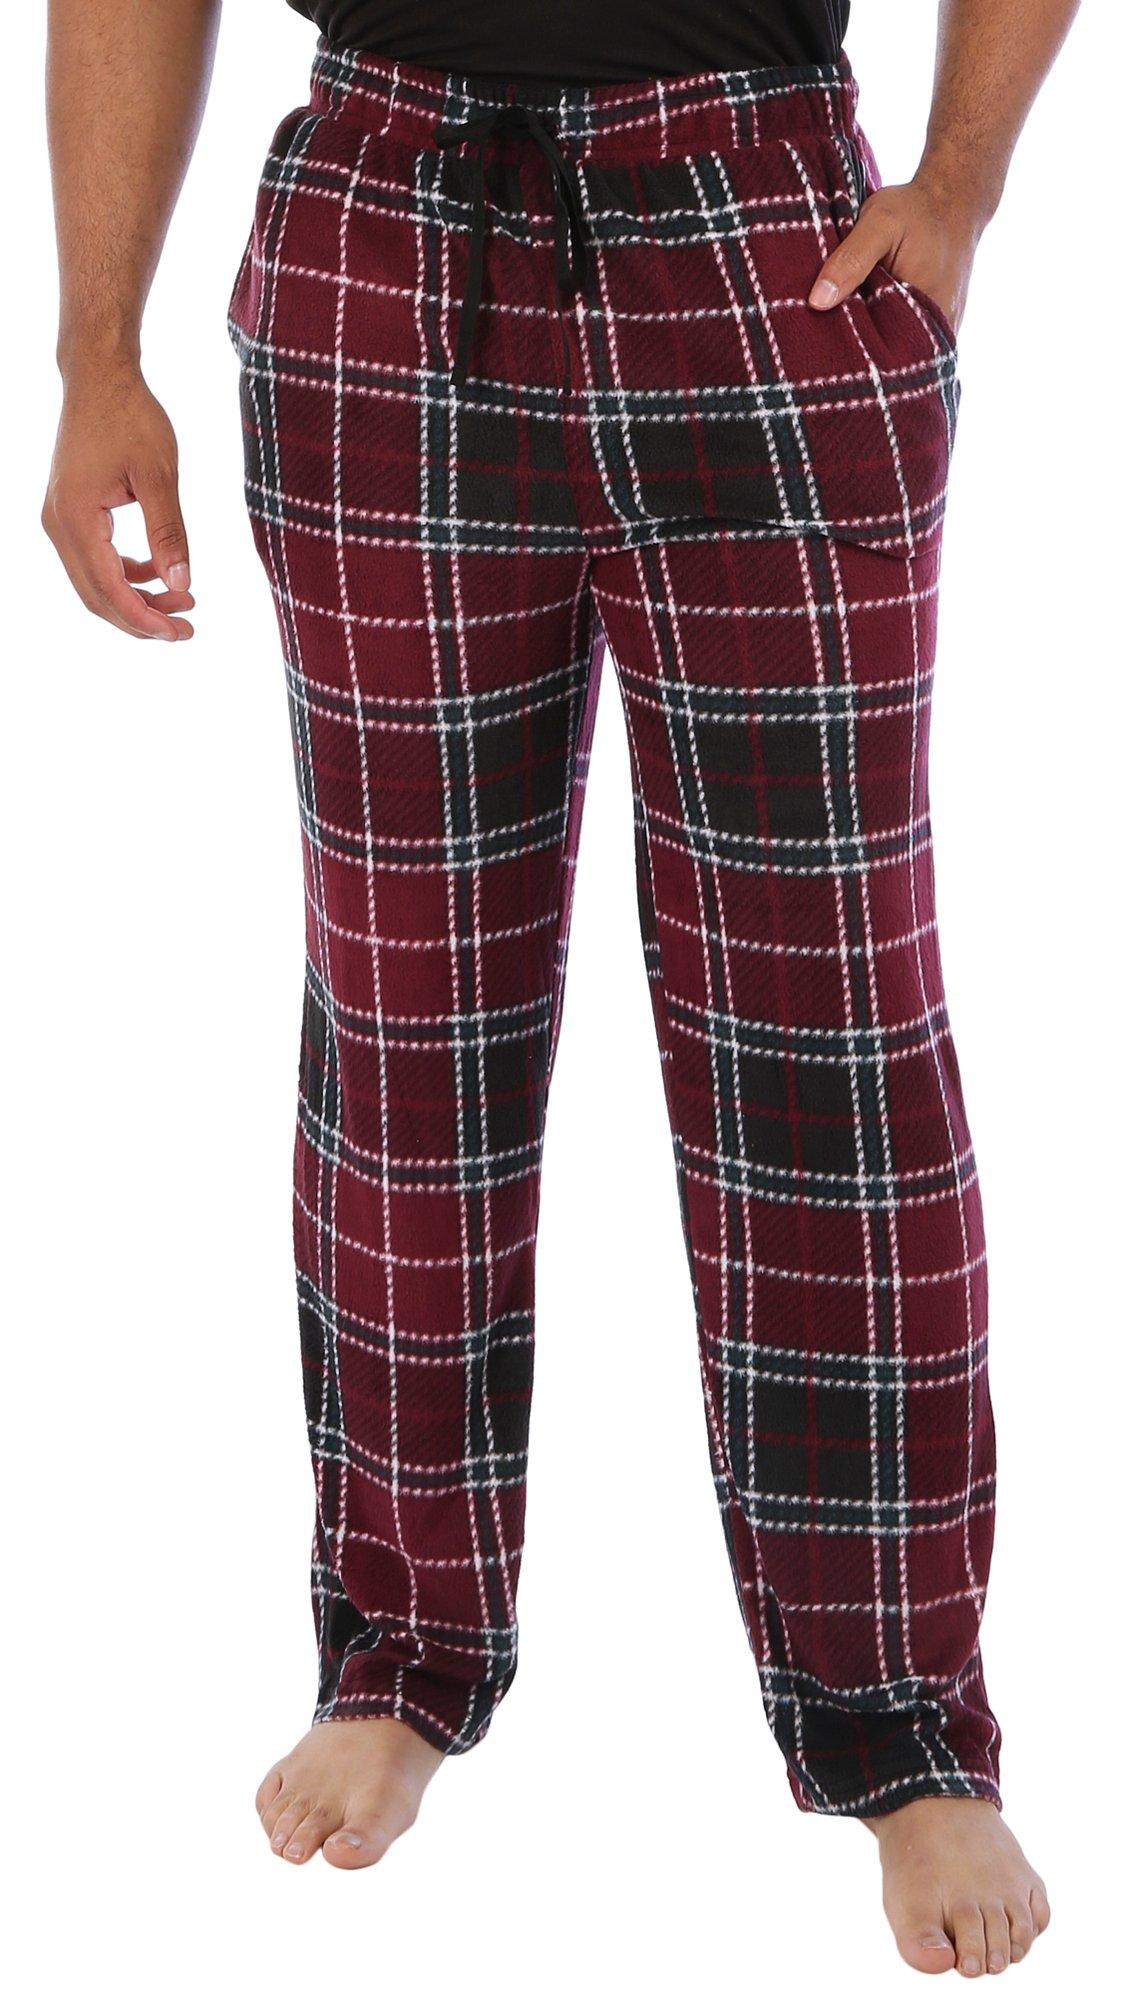 Hanes Men's Modal Spandex Pajama Joggers 